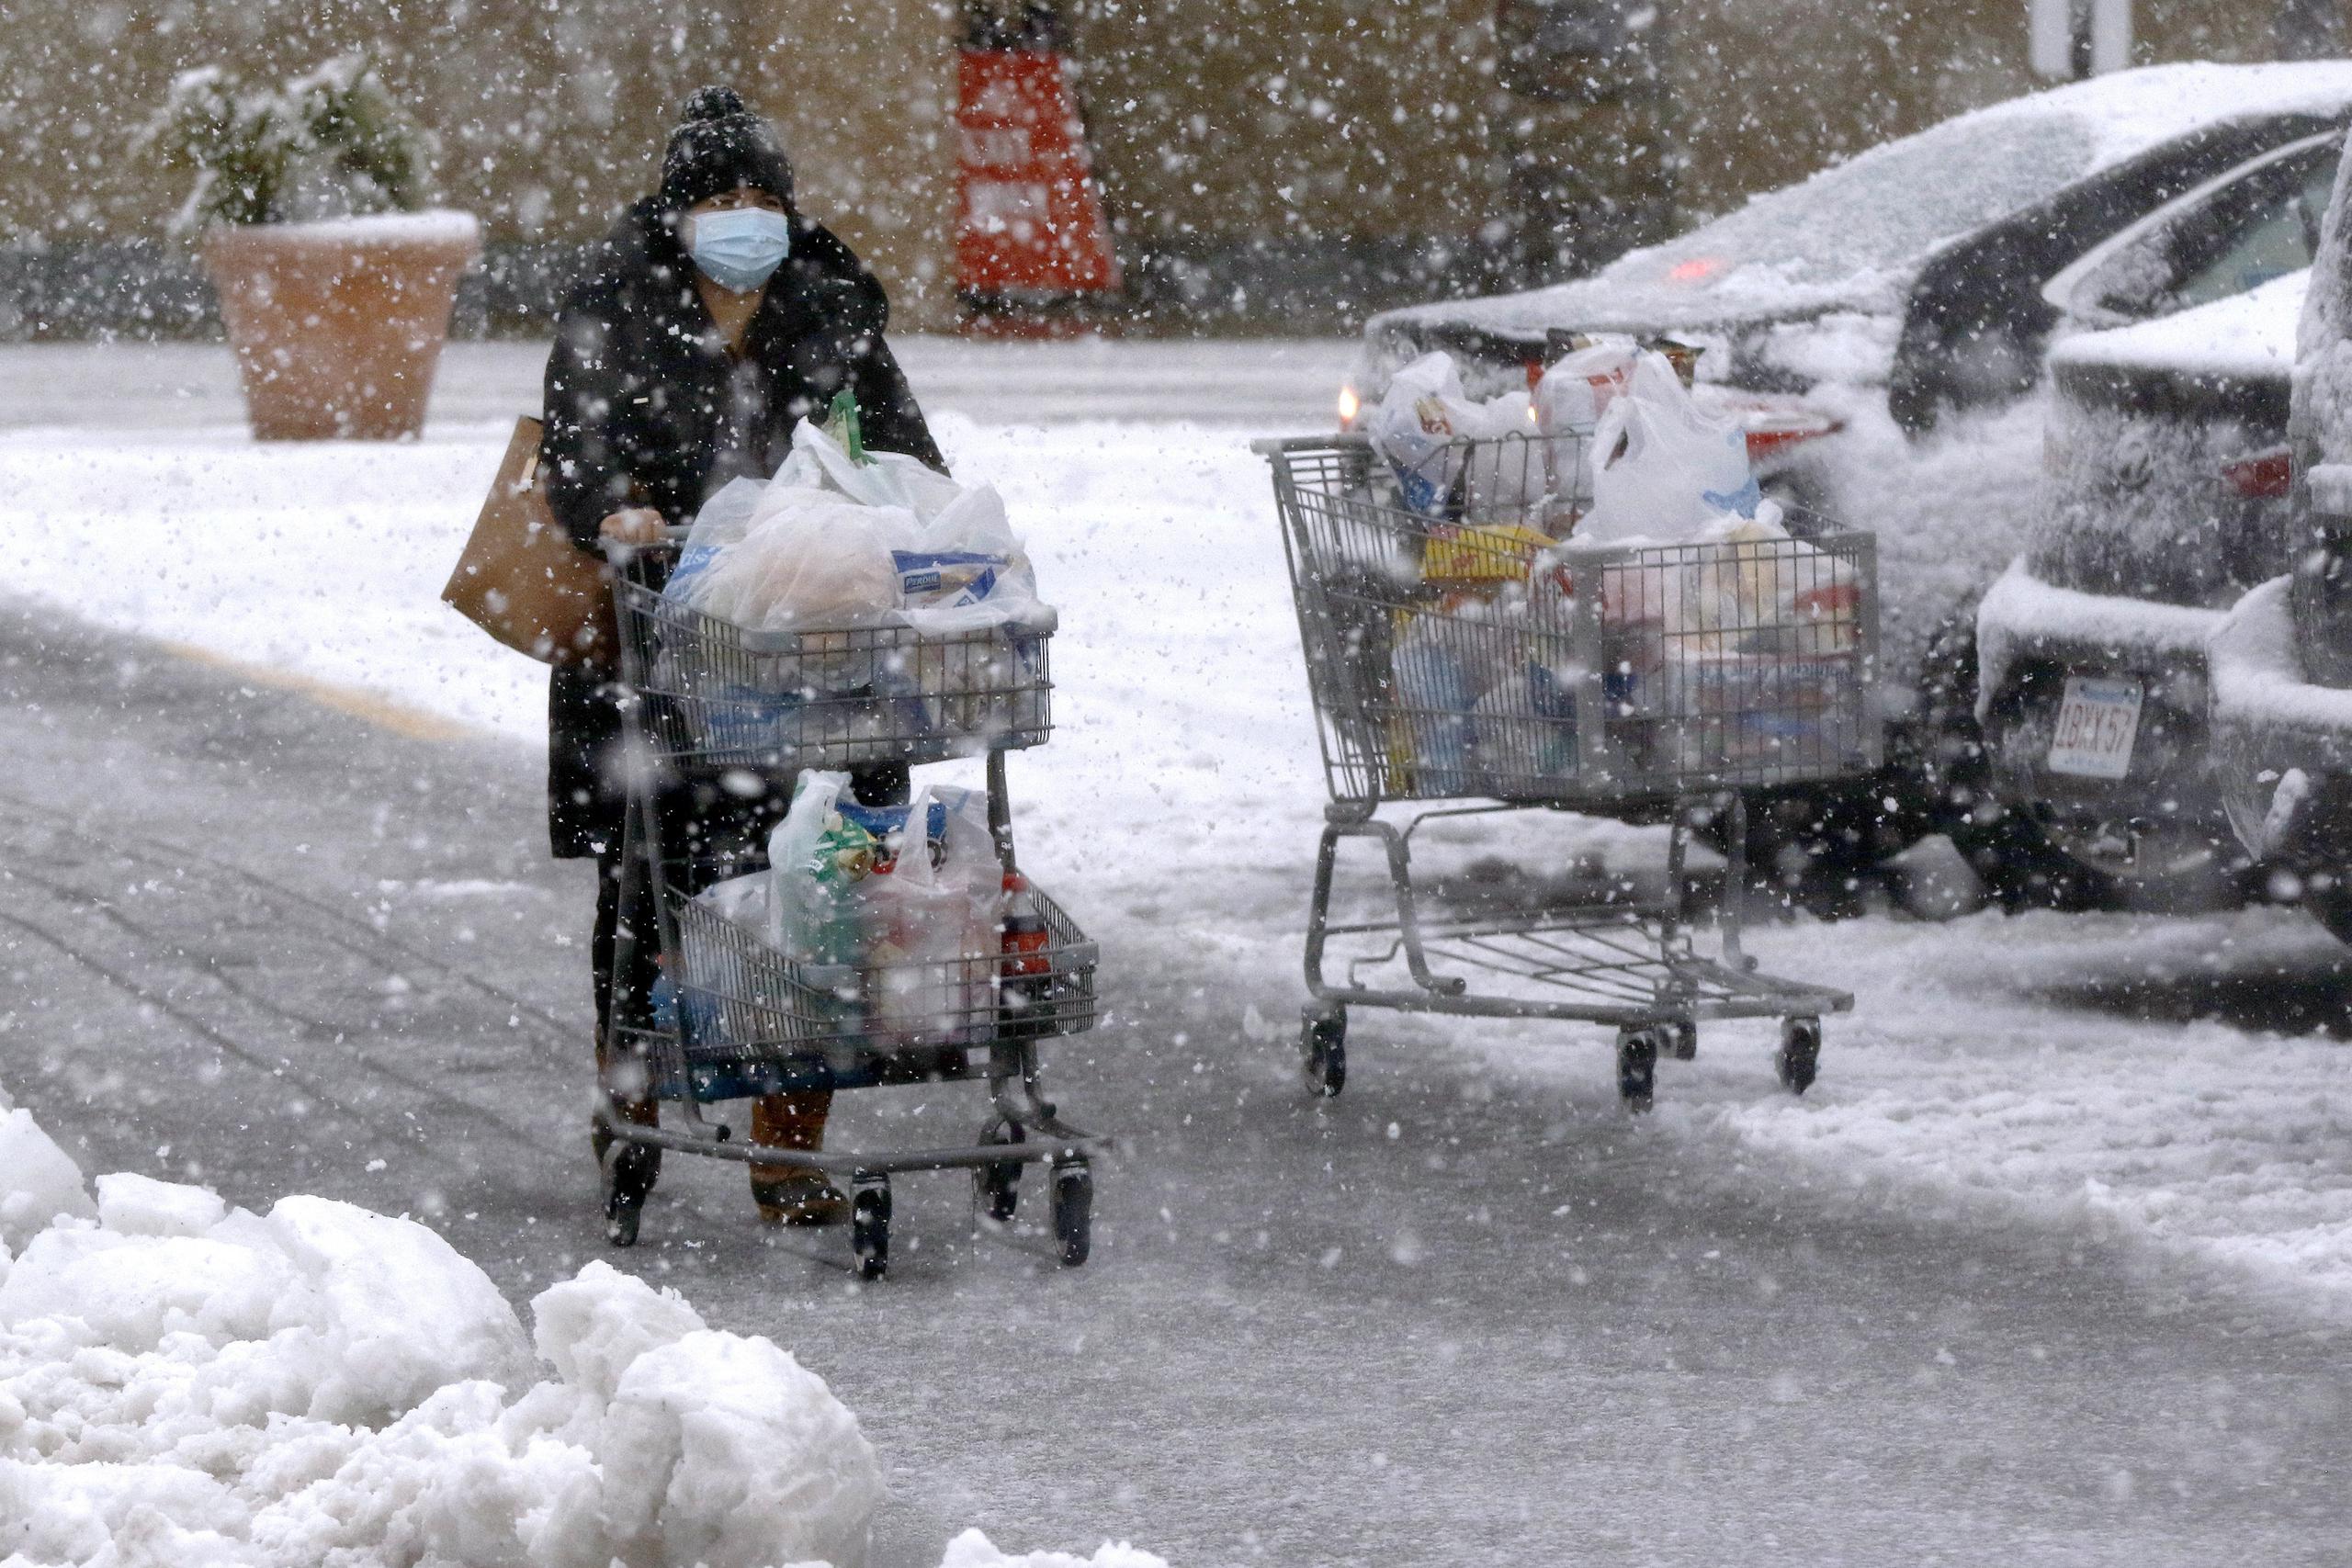 Una persona transporta comestibles en un carrito bajo una fuerte nevada en un estacionamiento en Marlborough, Massachusetts.